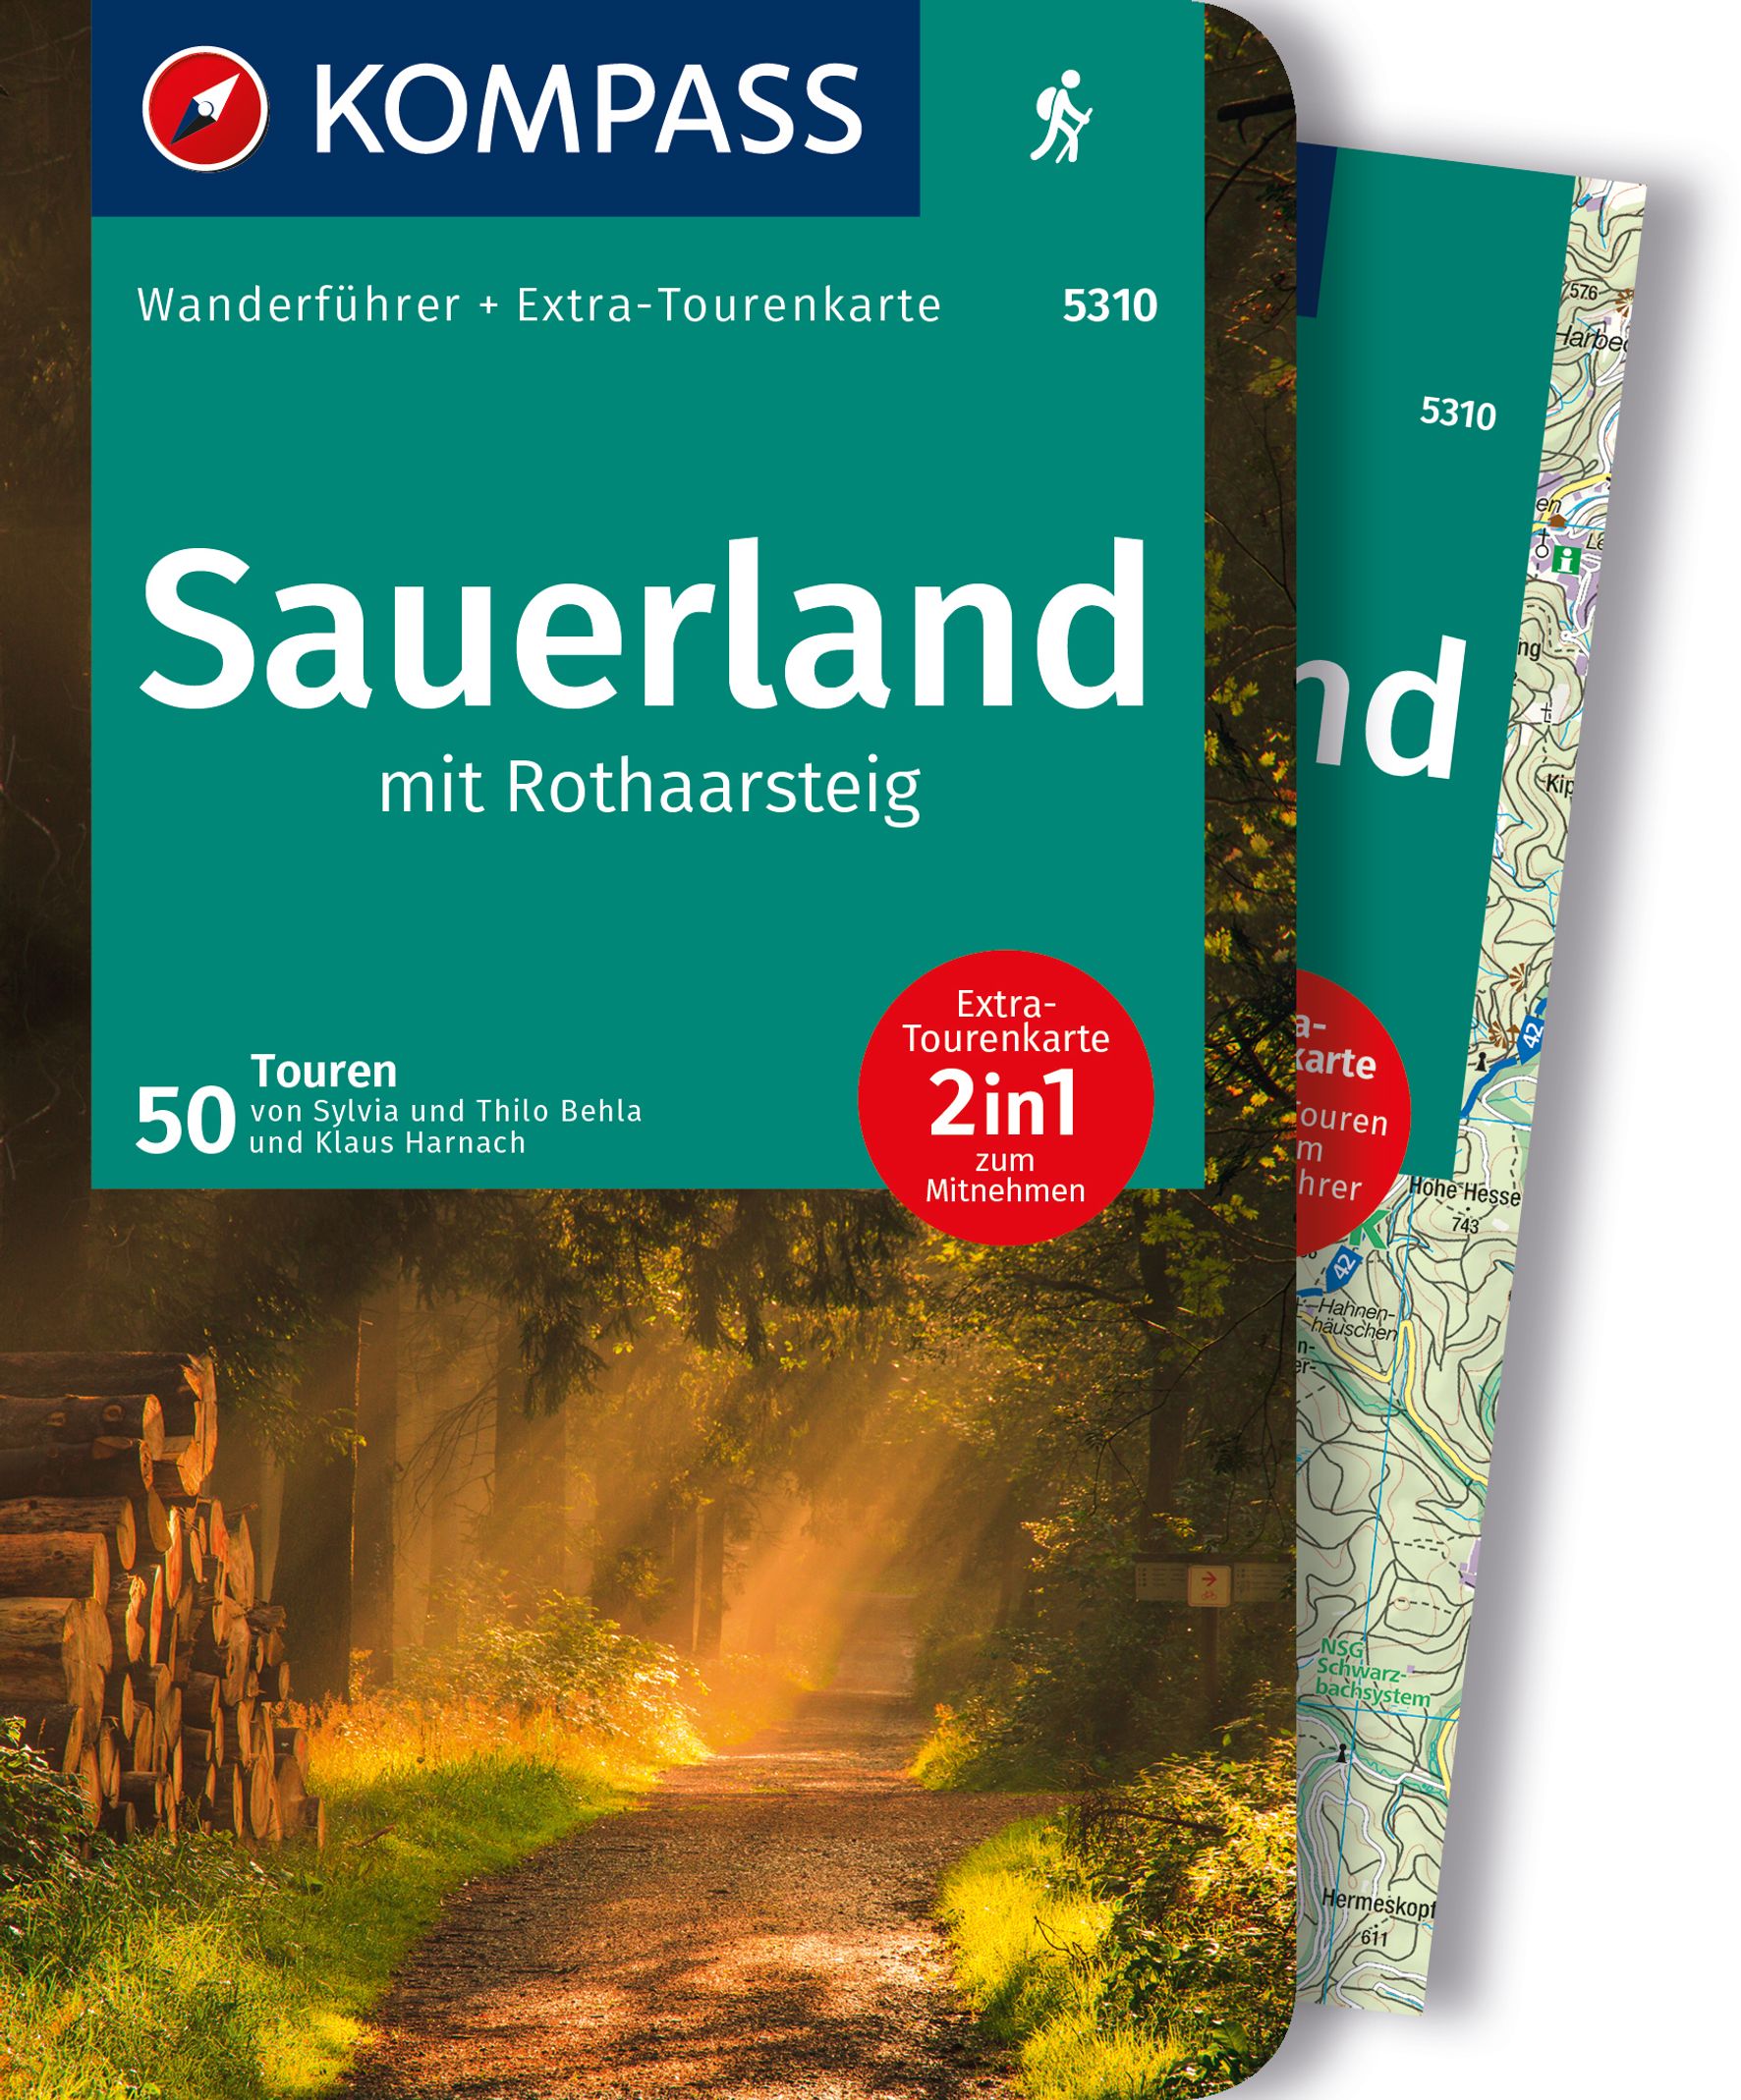 MAIRDUMONT Sauerland mit Rothaarsteig, 50 Touren mit Extra-Tourenkarte